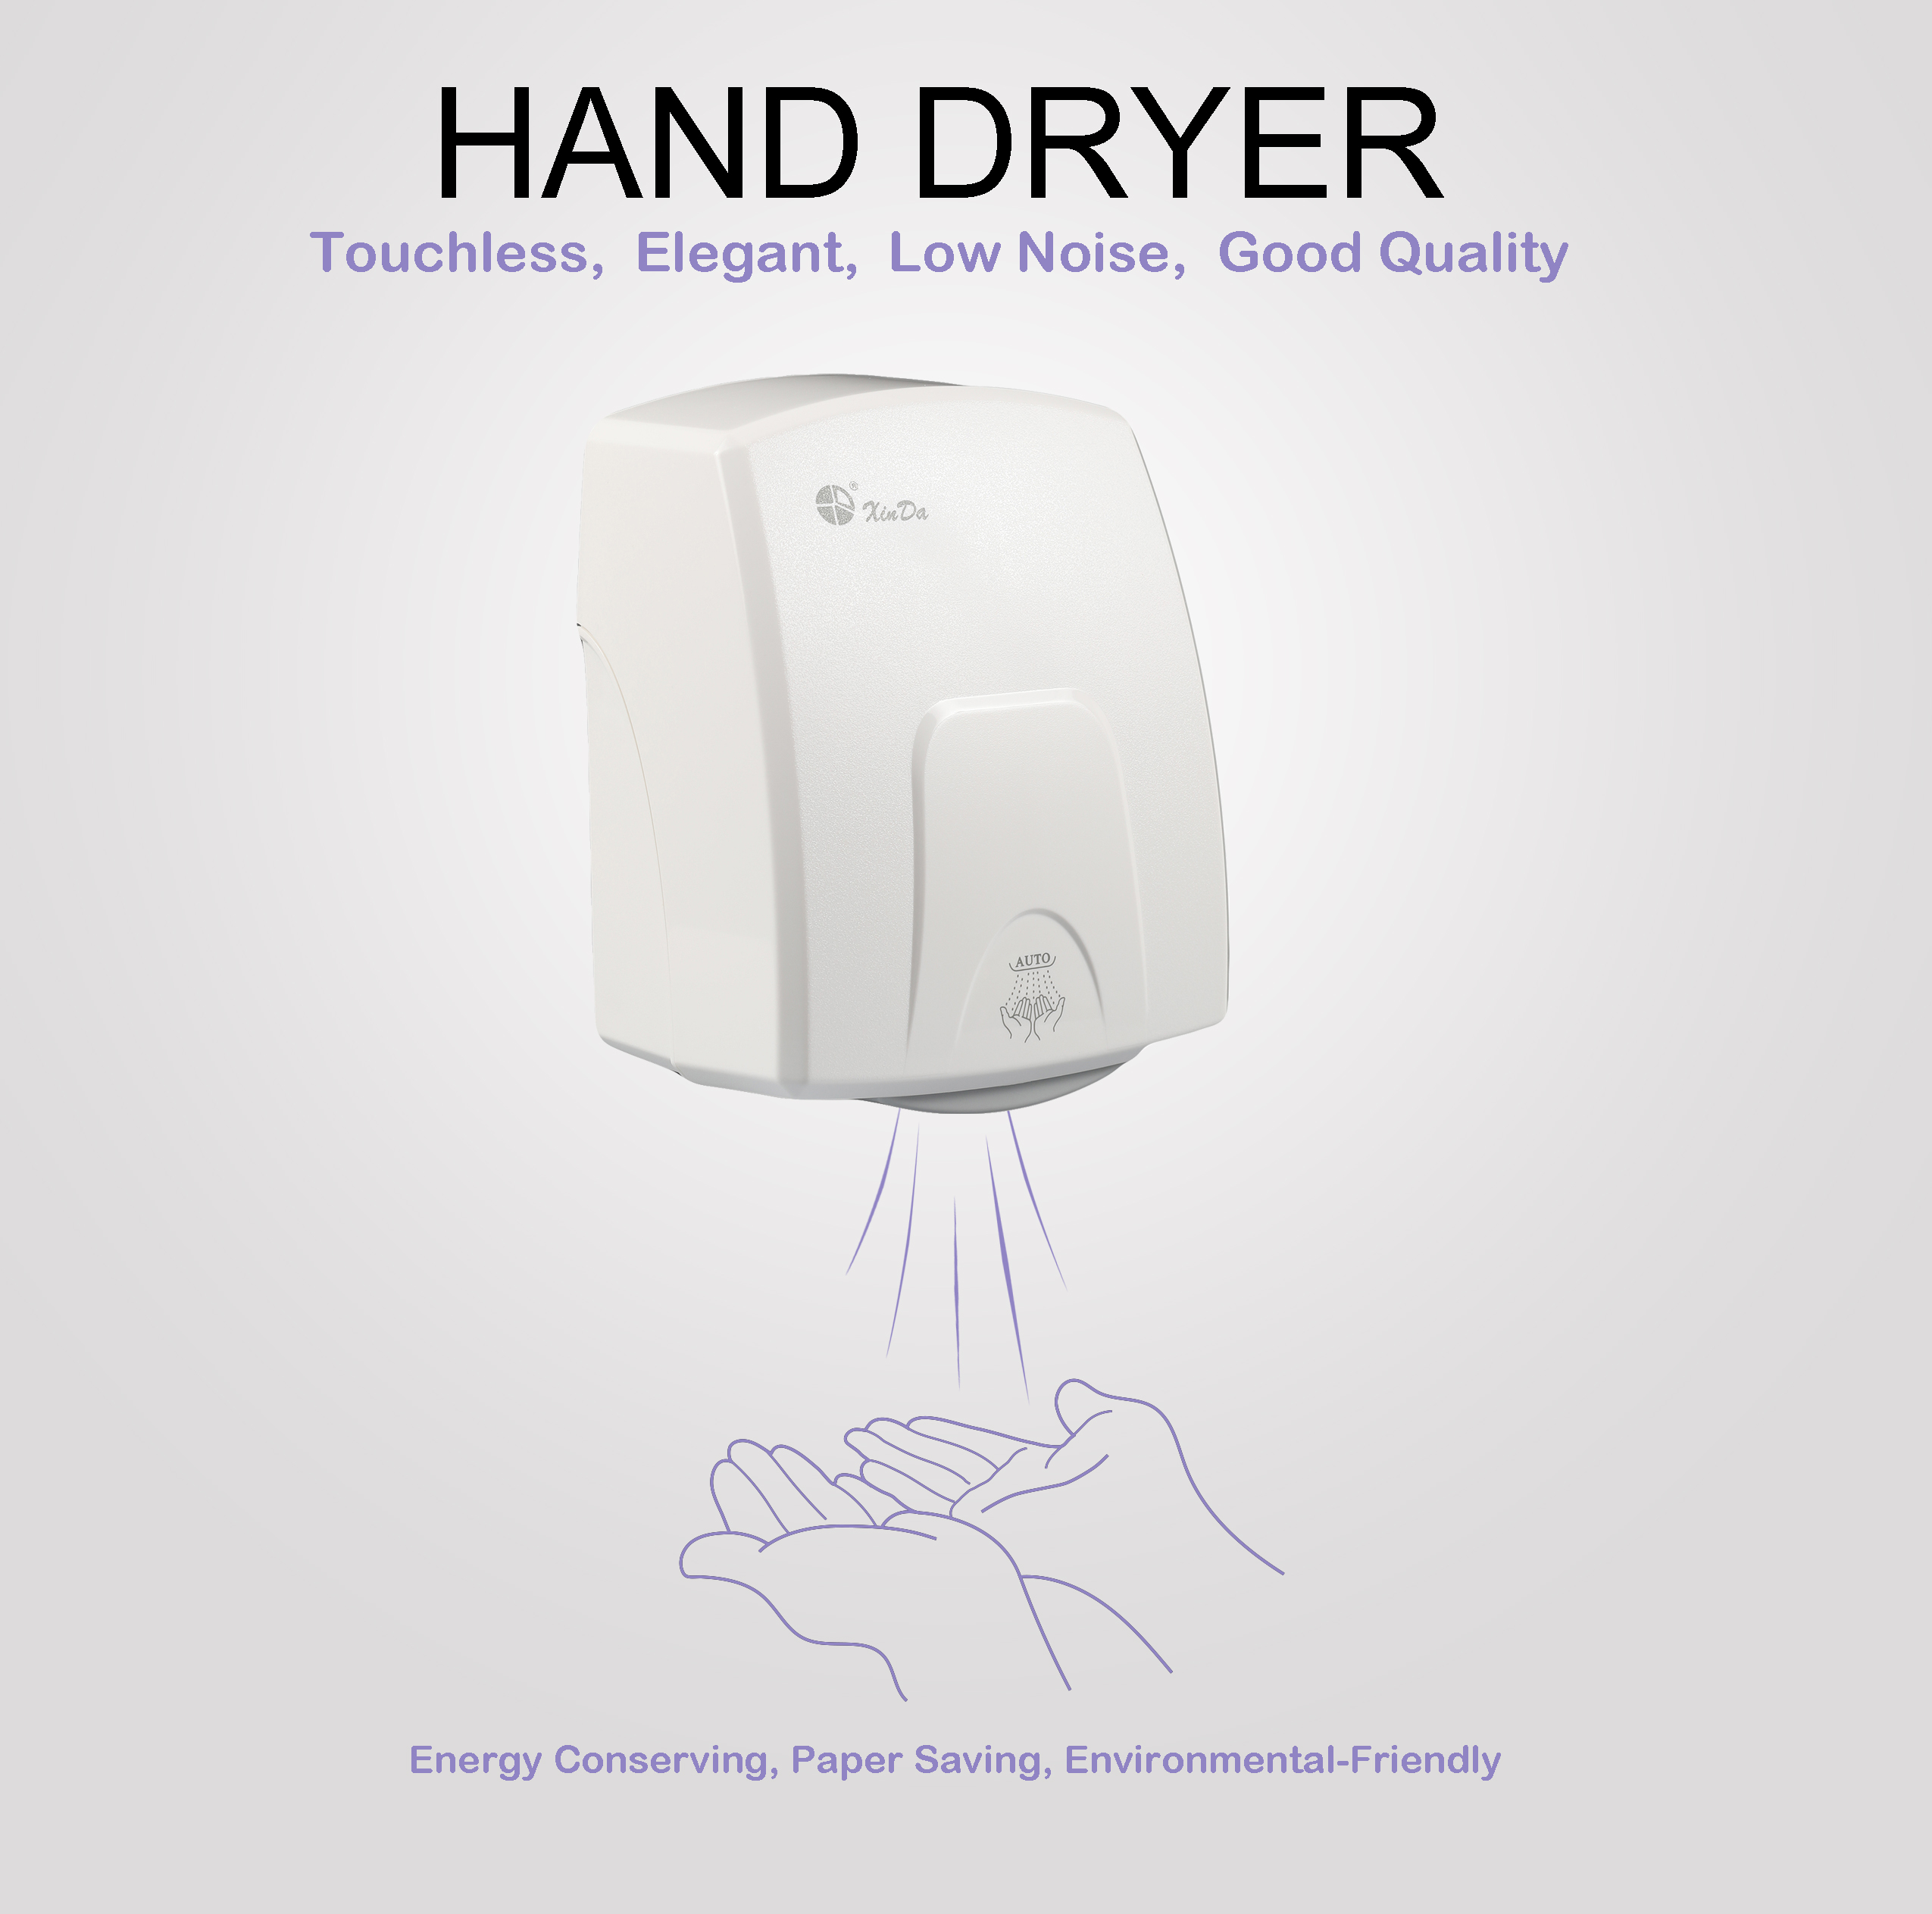 Os secadores de mãos profissionais de plástico com sensor infravermelho automático xinda gsq150 para banheiro secador de mãos